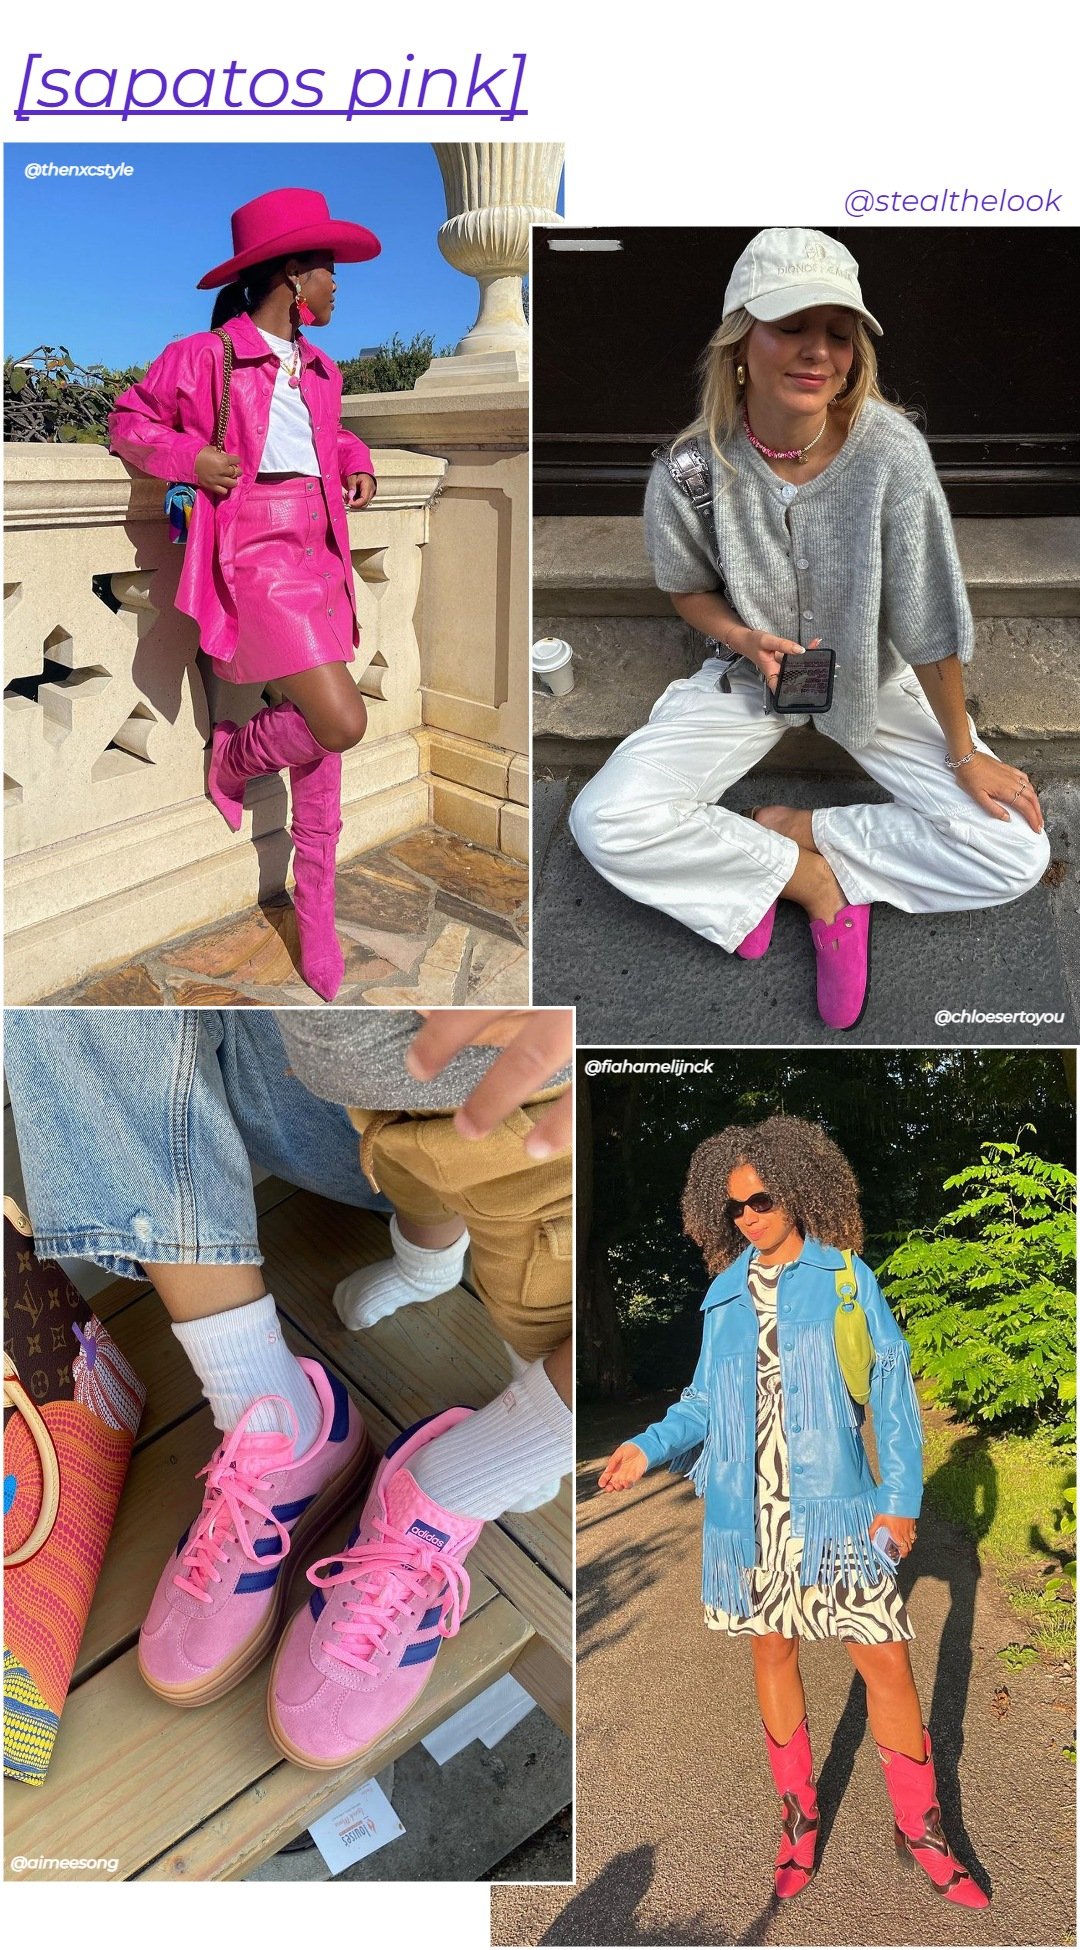 Sapatos pink - roupas diversas - sapato pink - inverno - colagem com quato mulheres diferentes usando sapatos cor-de-rosa - https://stealthelook.com.br